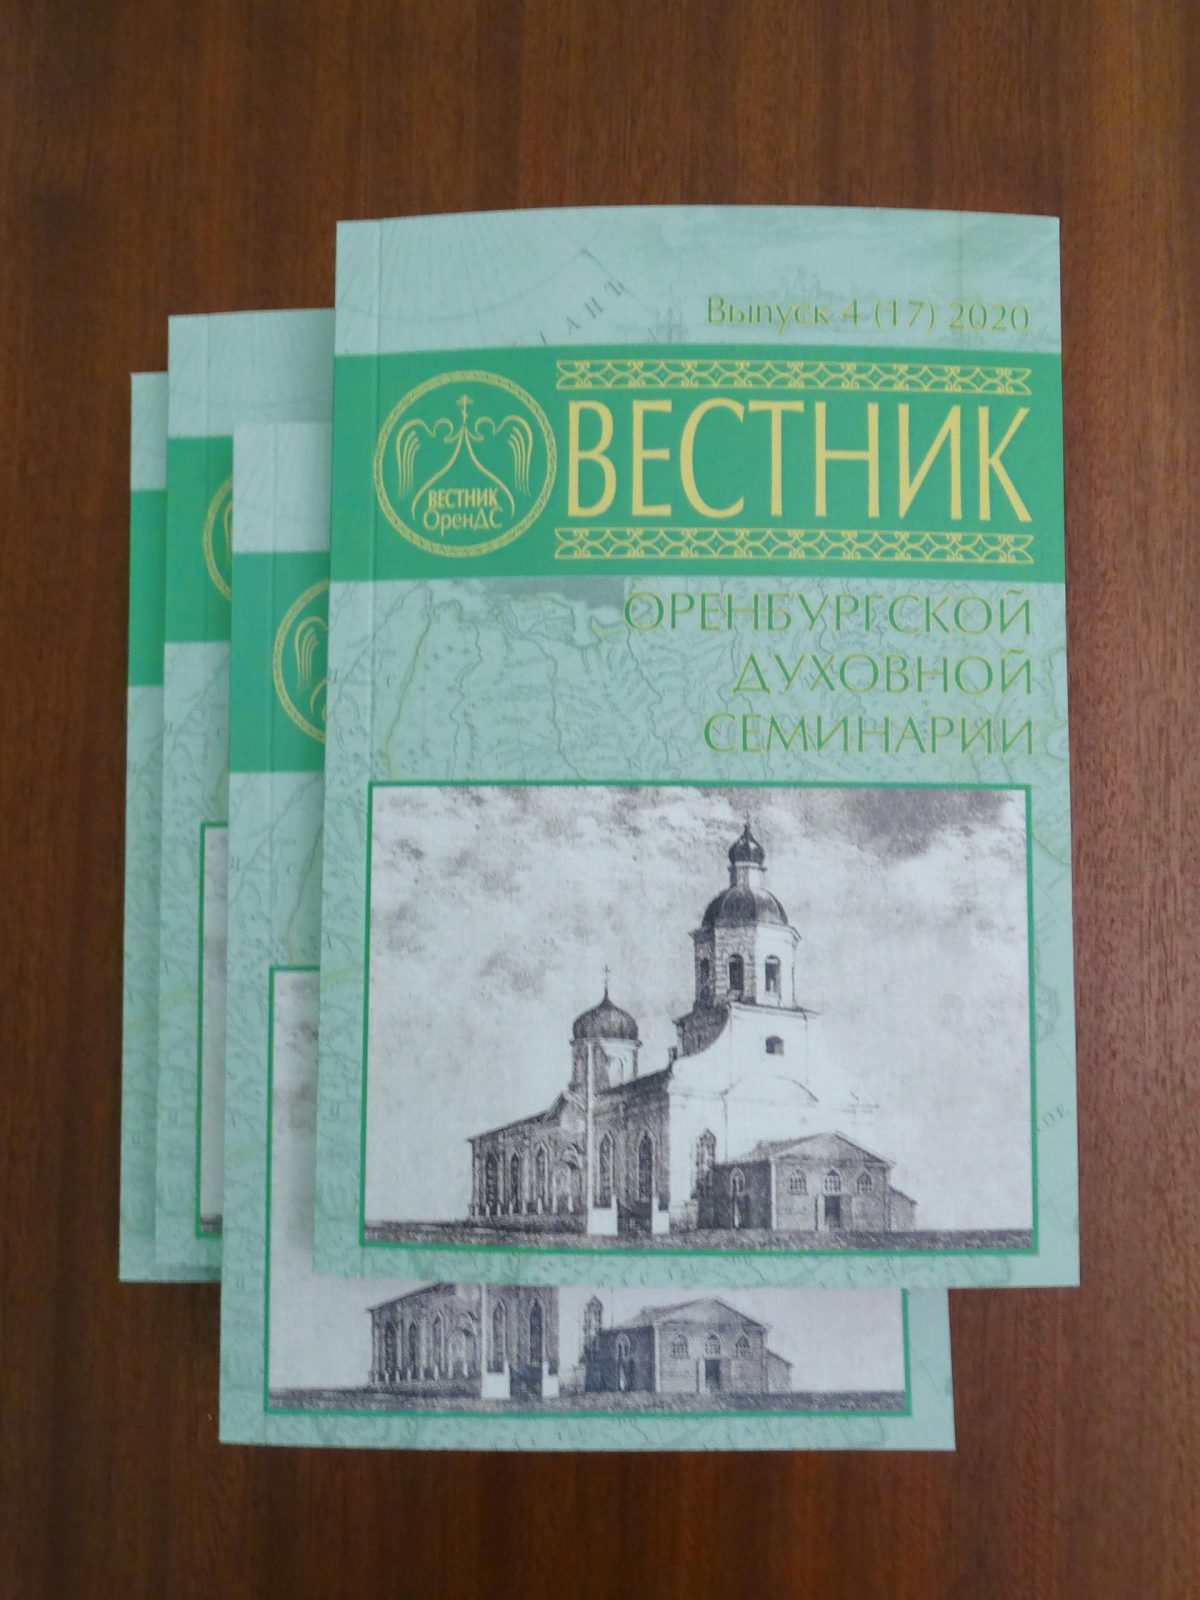 ОренДС выпустила четвертый в 2020 году «Вестник Оренбургской духовной семинарии»